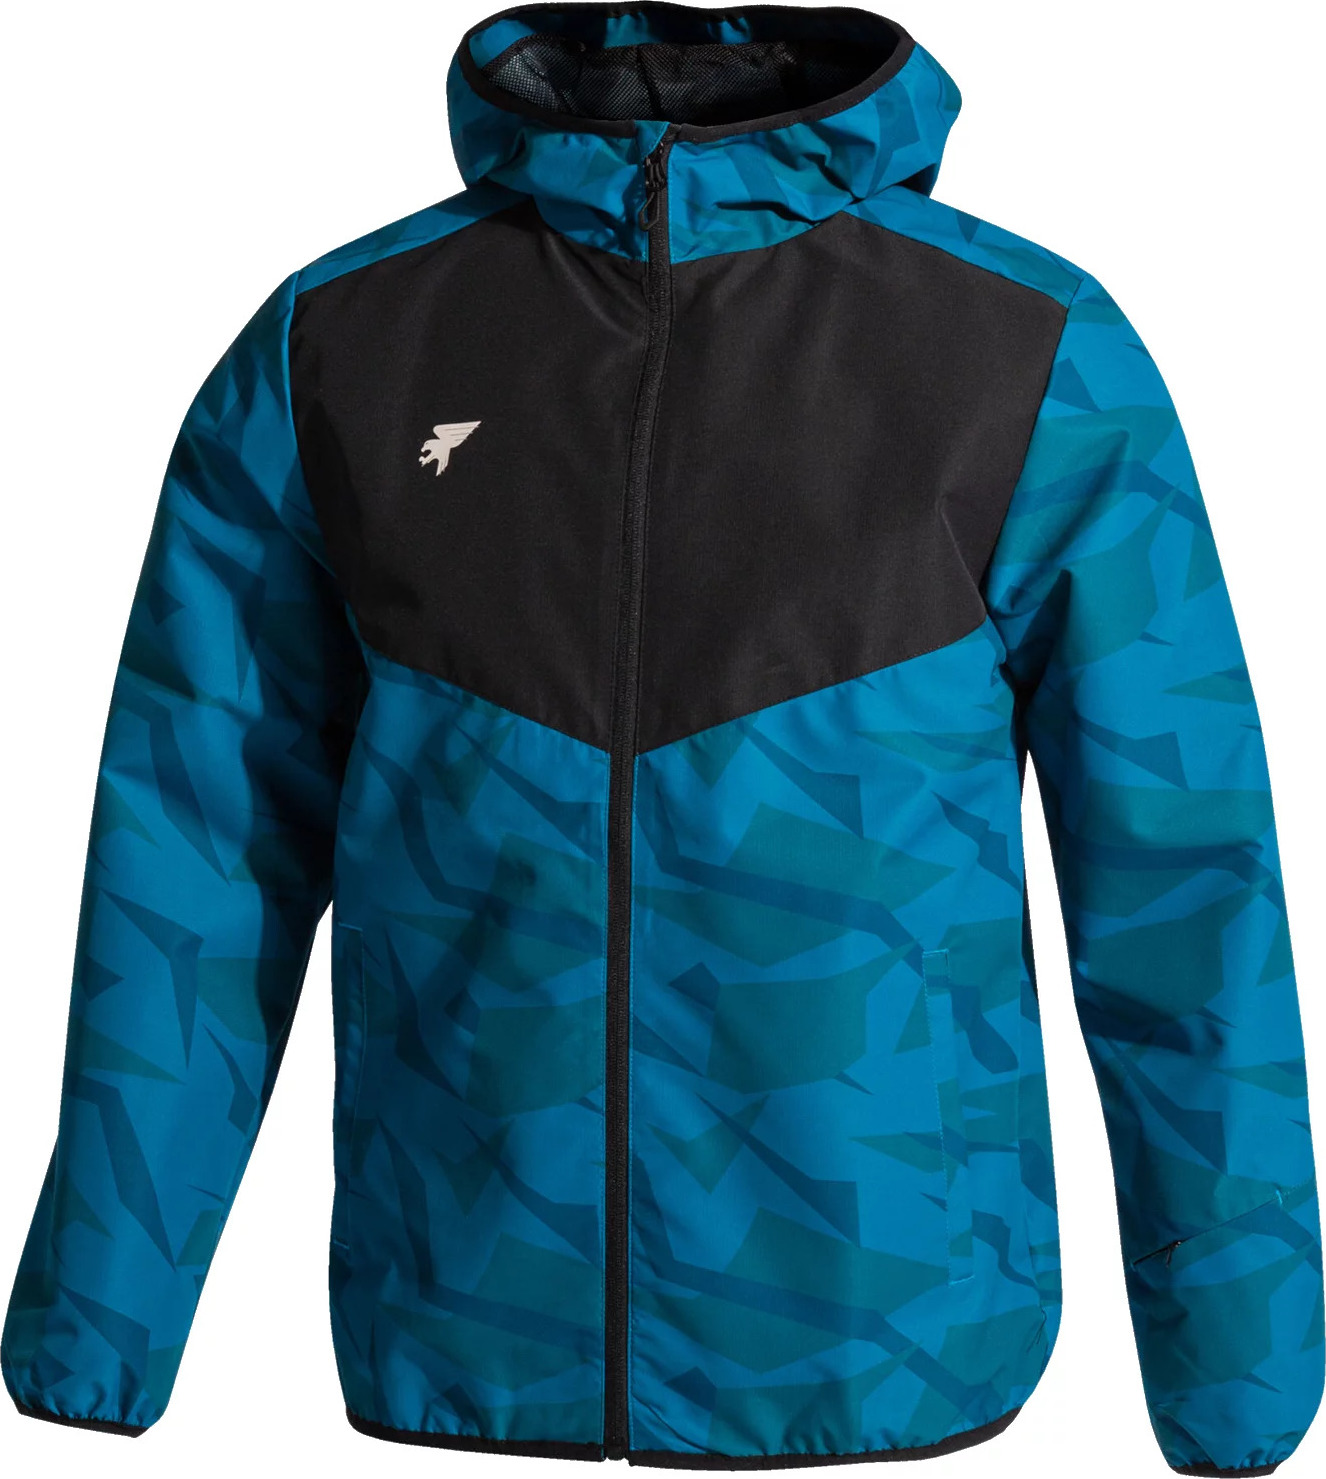 Modrá vzorovaná sportovní bunda Joma Explorer Rain Jacket 103017-713 Velikost: M